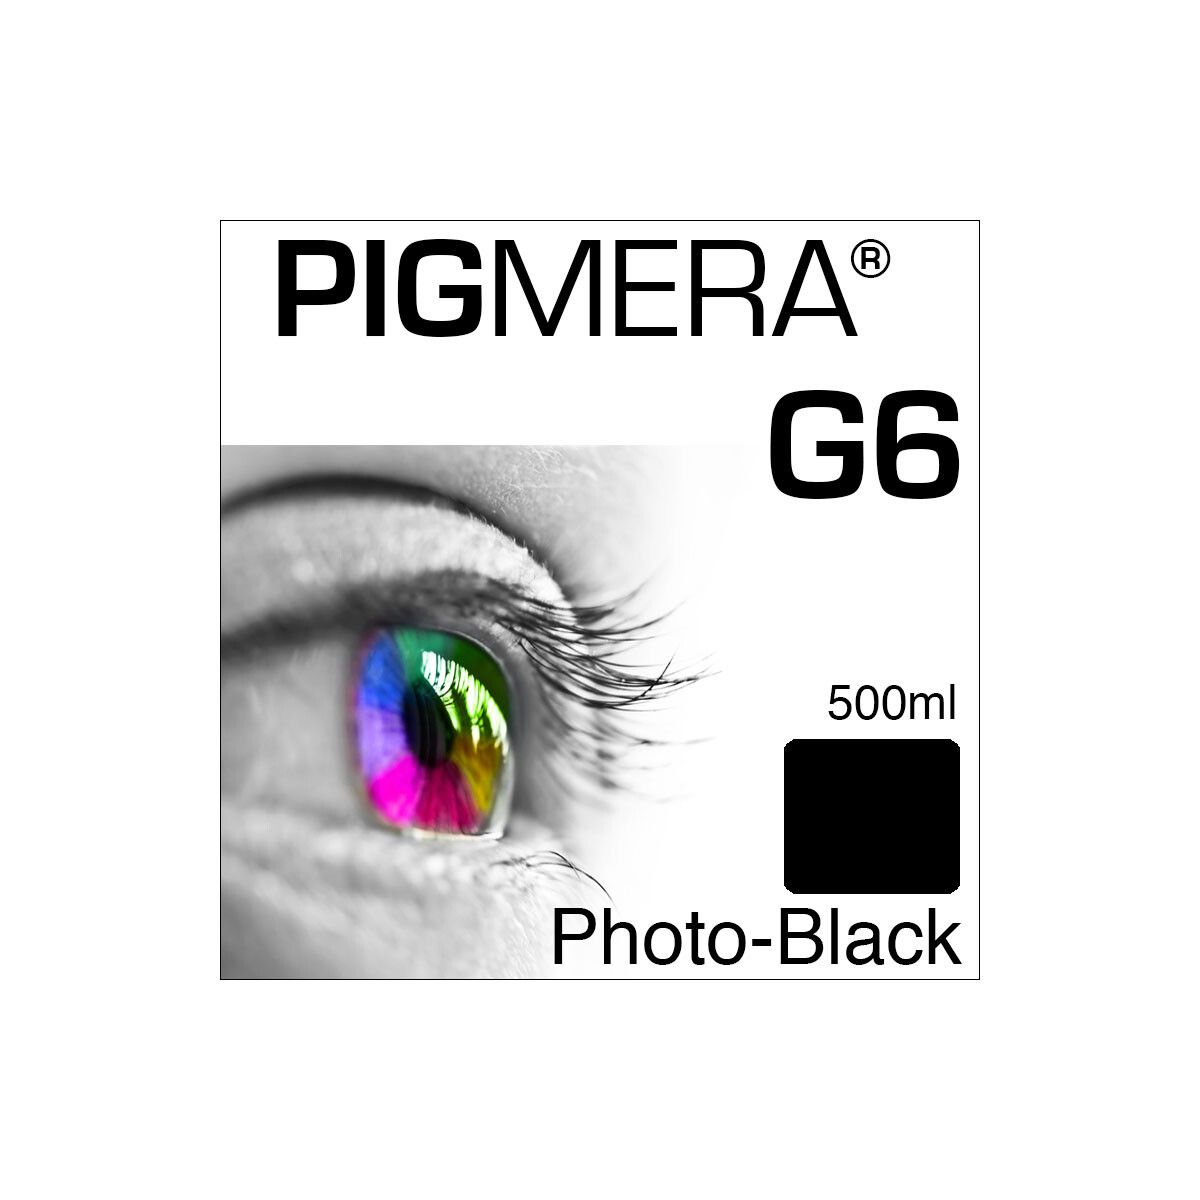 farbenwerk Pigmera G6 Bottle Photo-Black 500ml